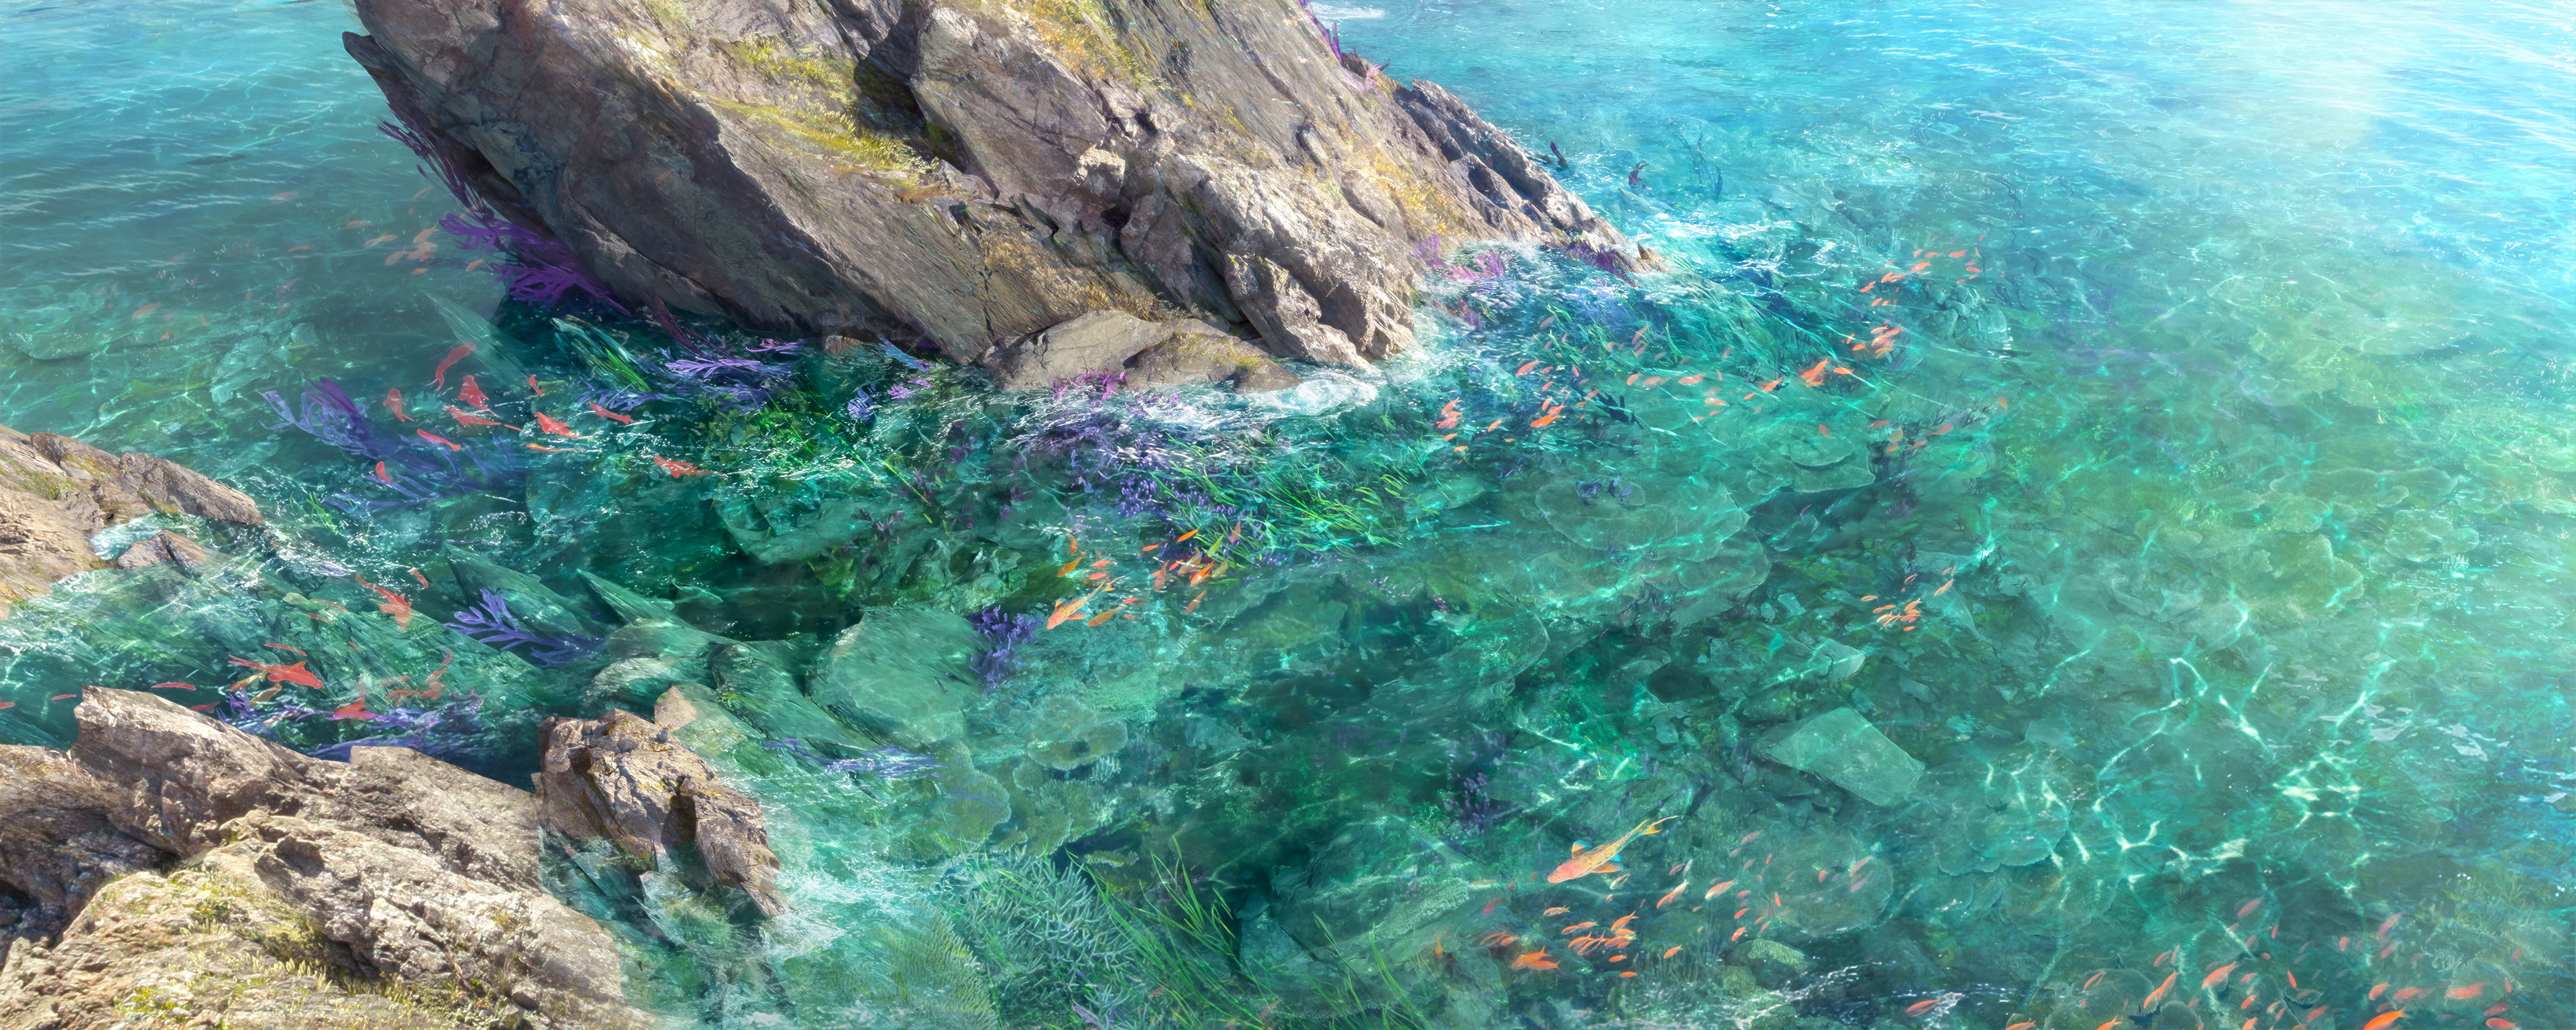 Artwork Digital Art River Fish Rocks Nature Water 3840x1536